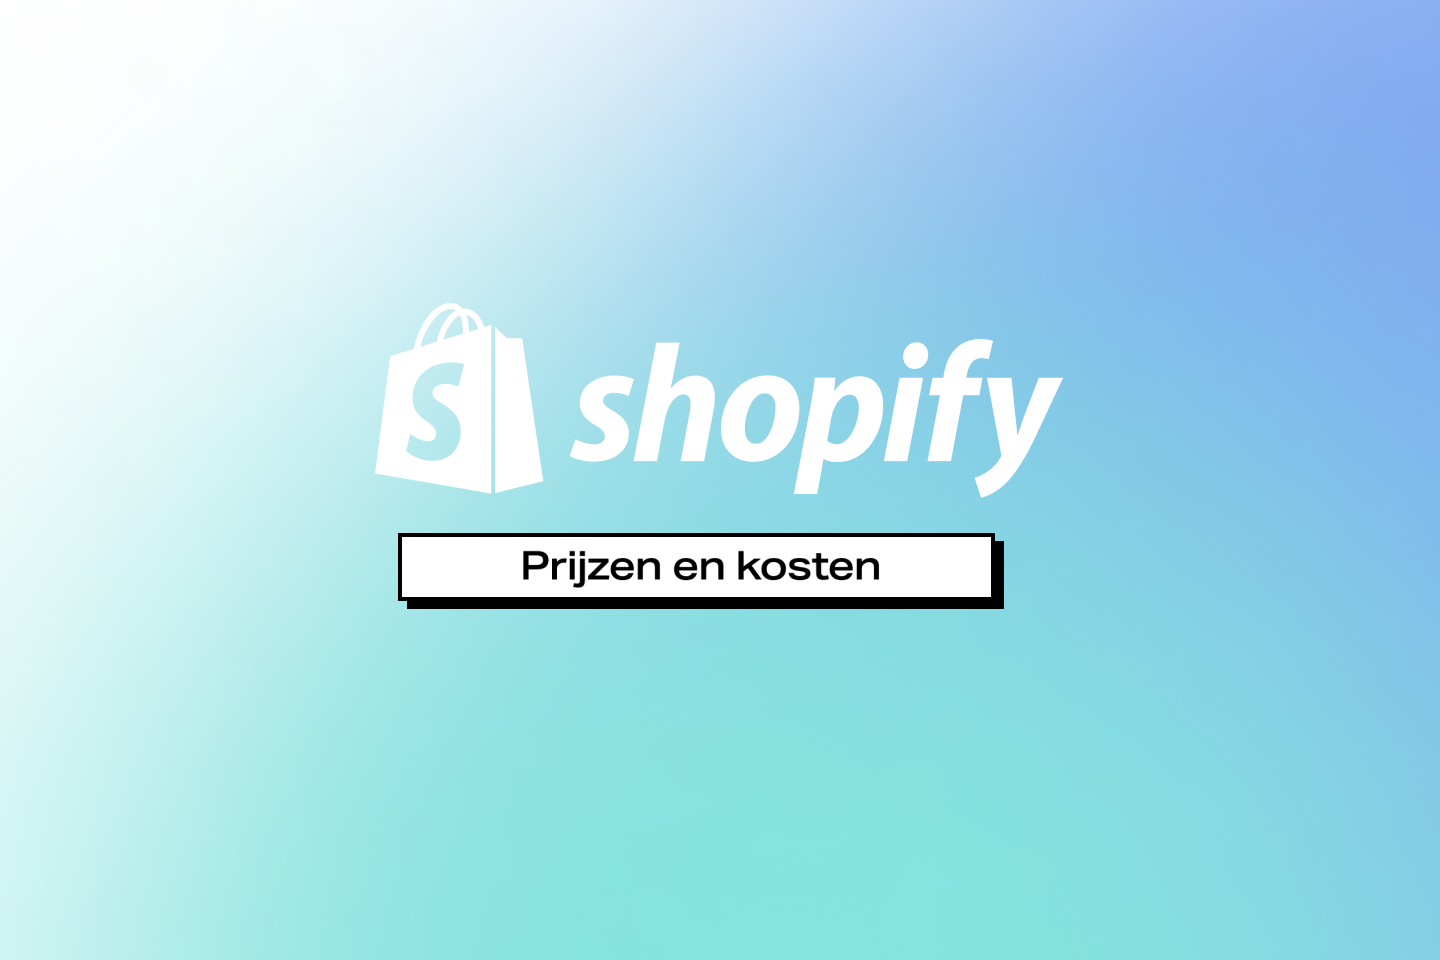 Shopify overzicht van prijzen, kosten en transaction fees